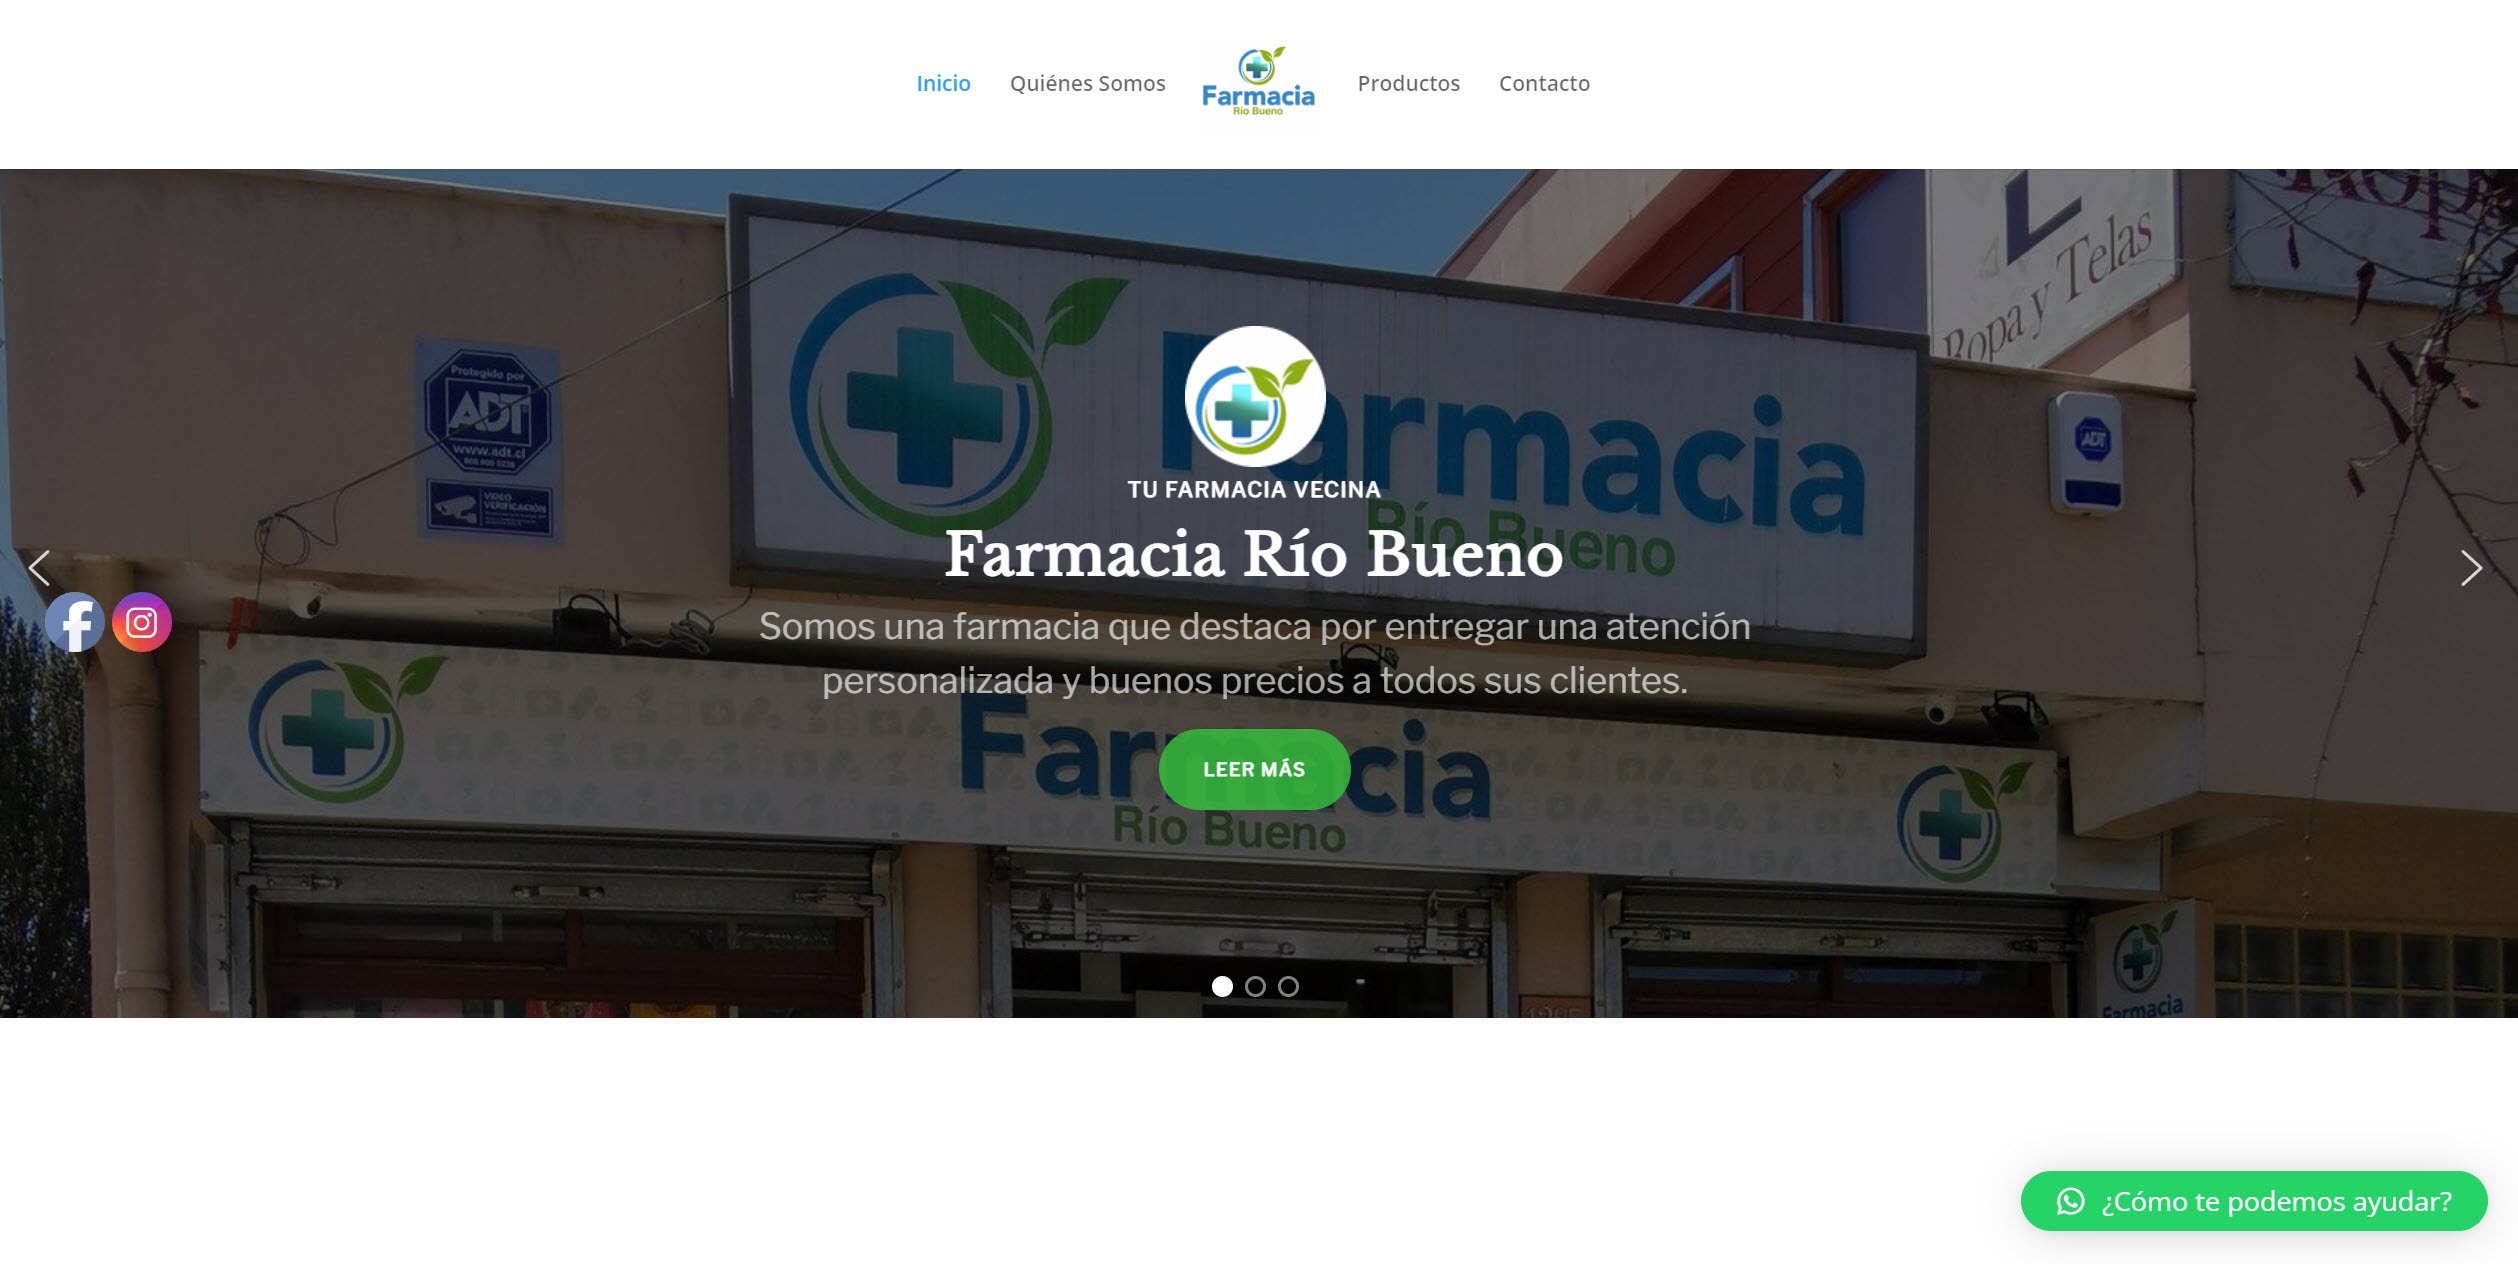 Proyecto Farmacia Río Bueno: Expandiendo Horizontes a Través de la Web